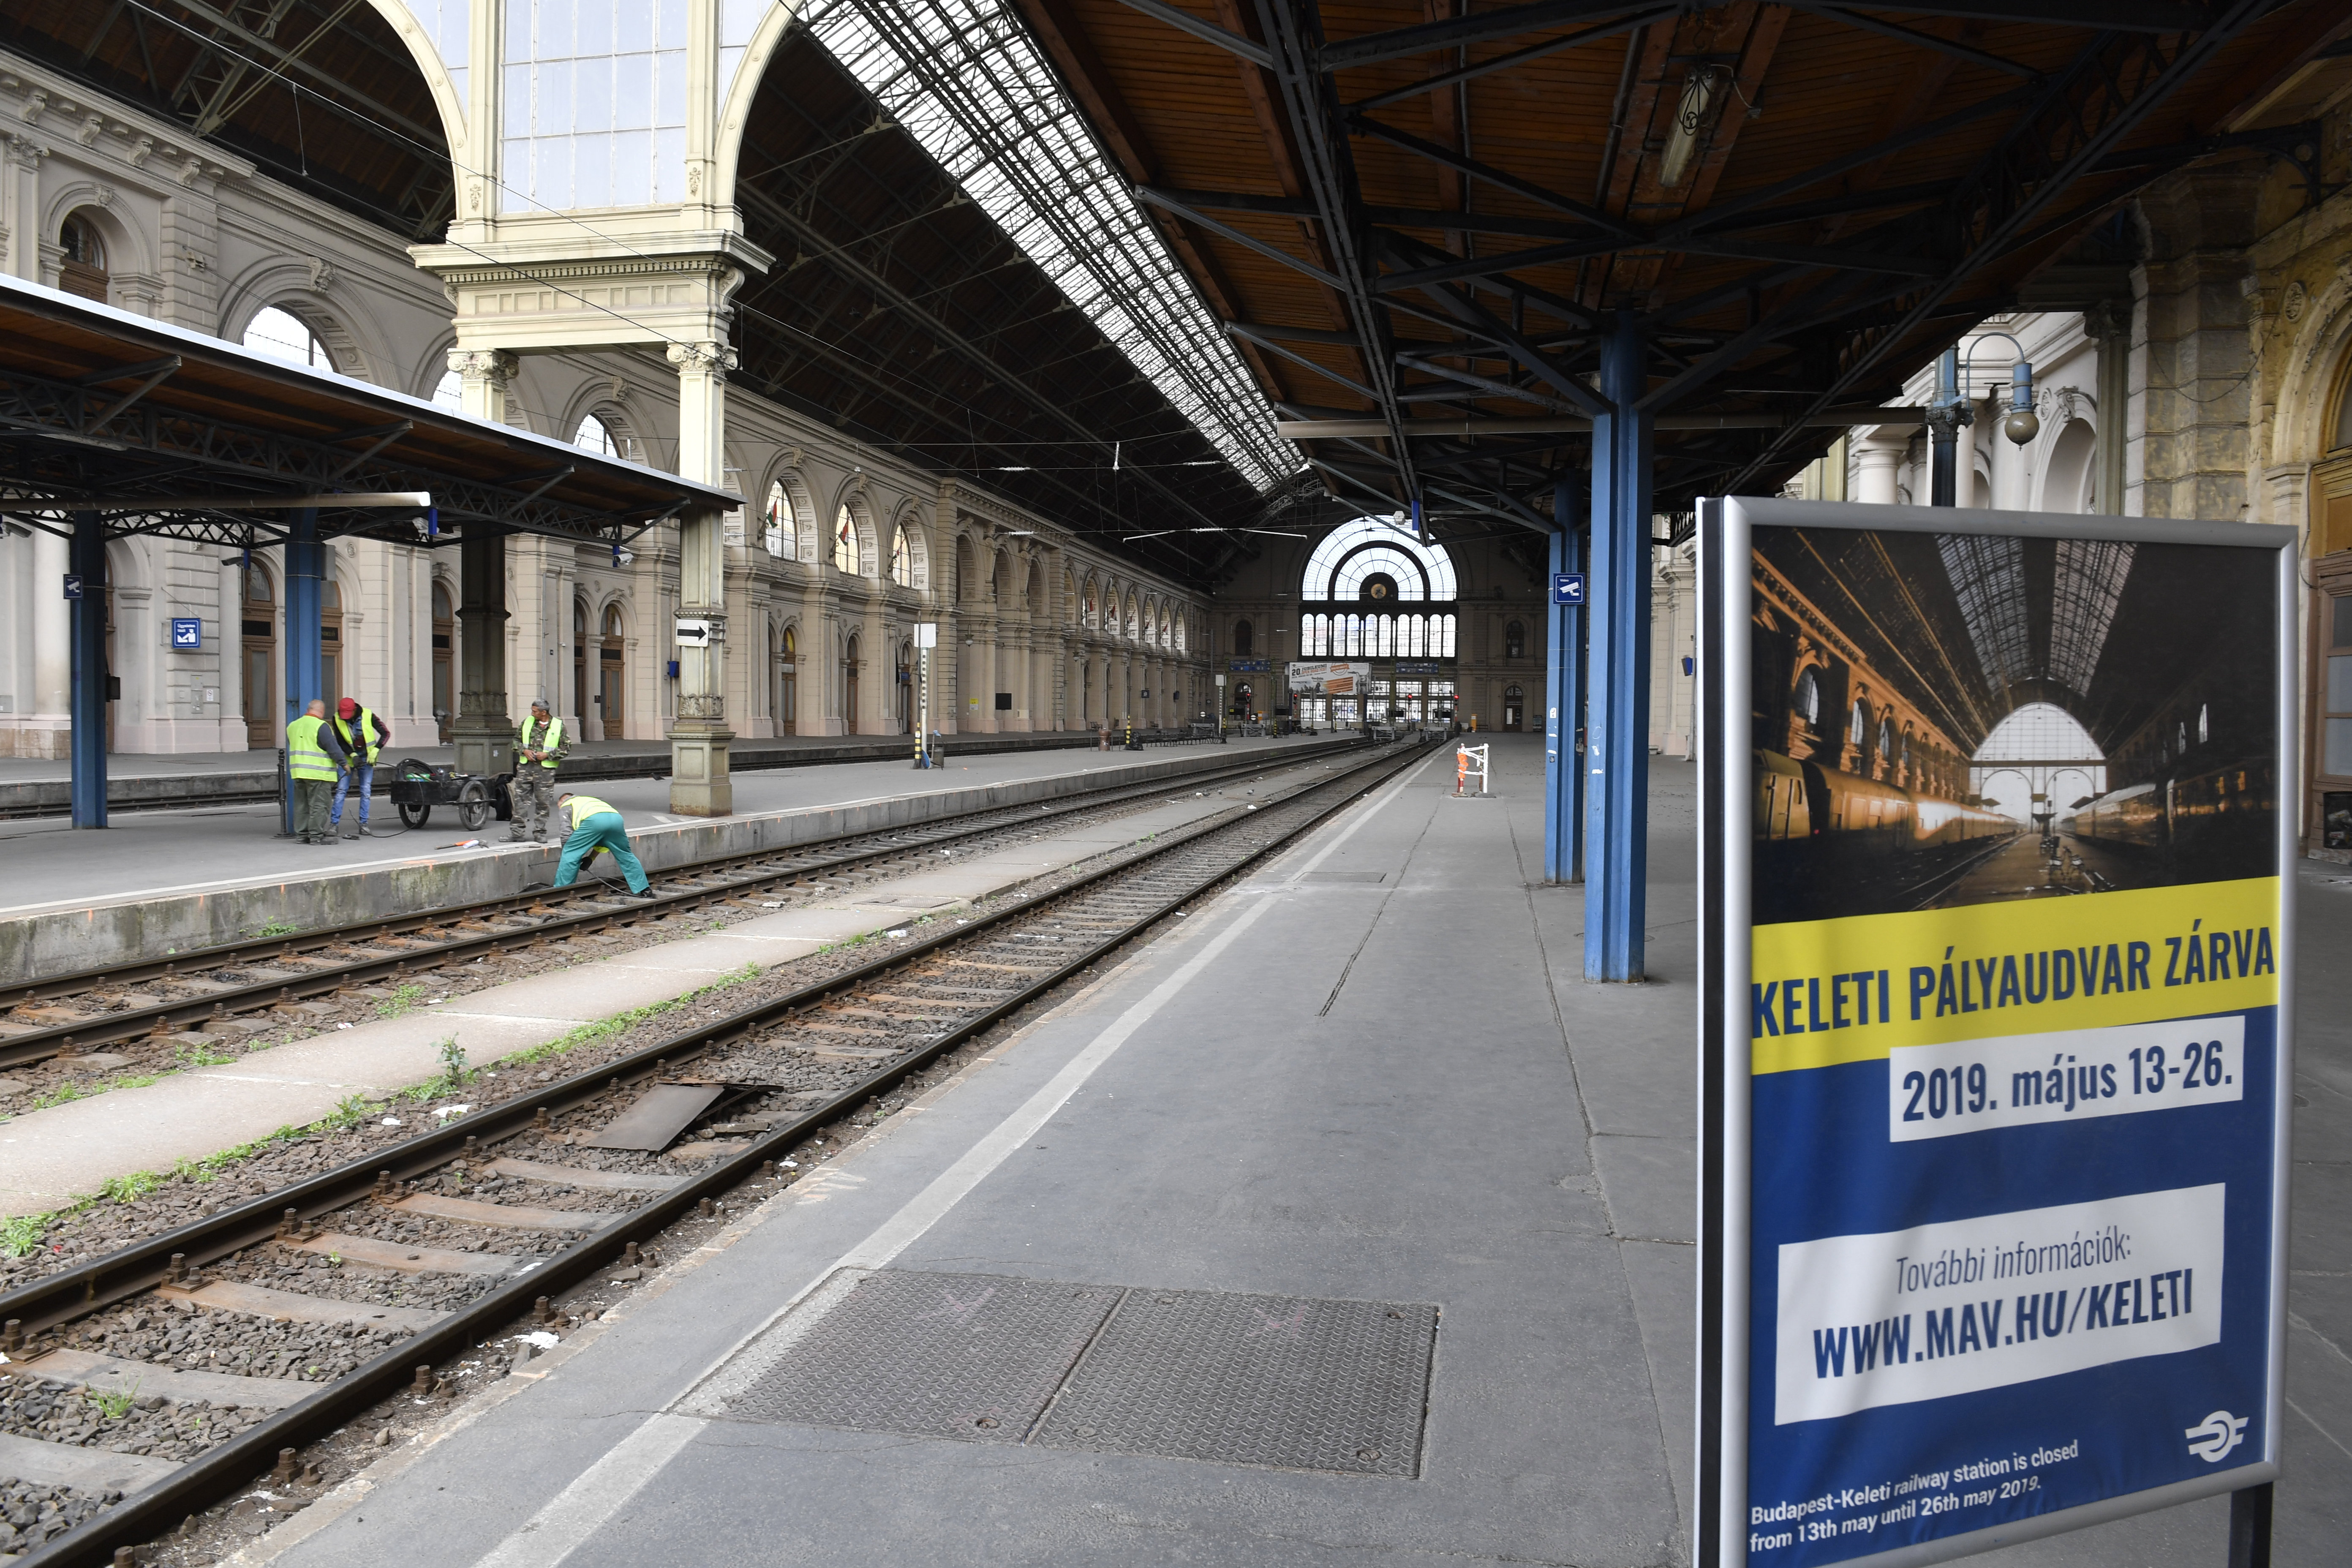 Két hétre bezár a Keleti, így néz ki most a pályaudvar – fotók - Blikk